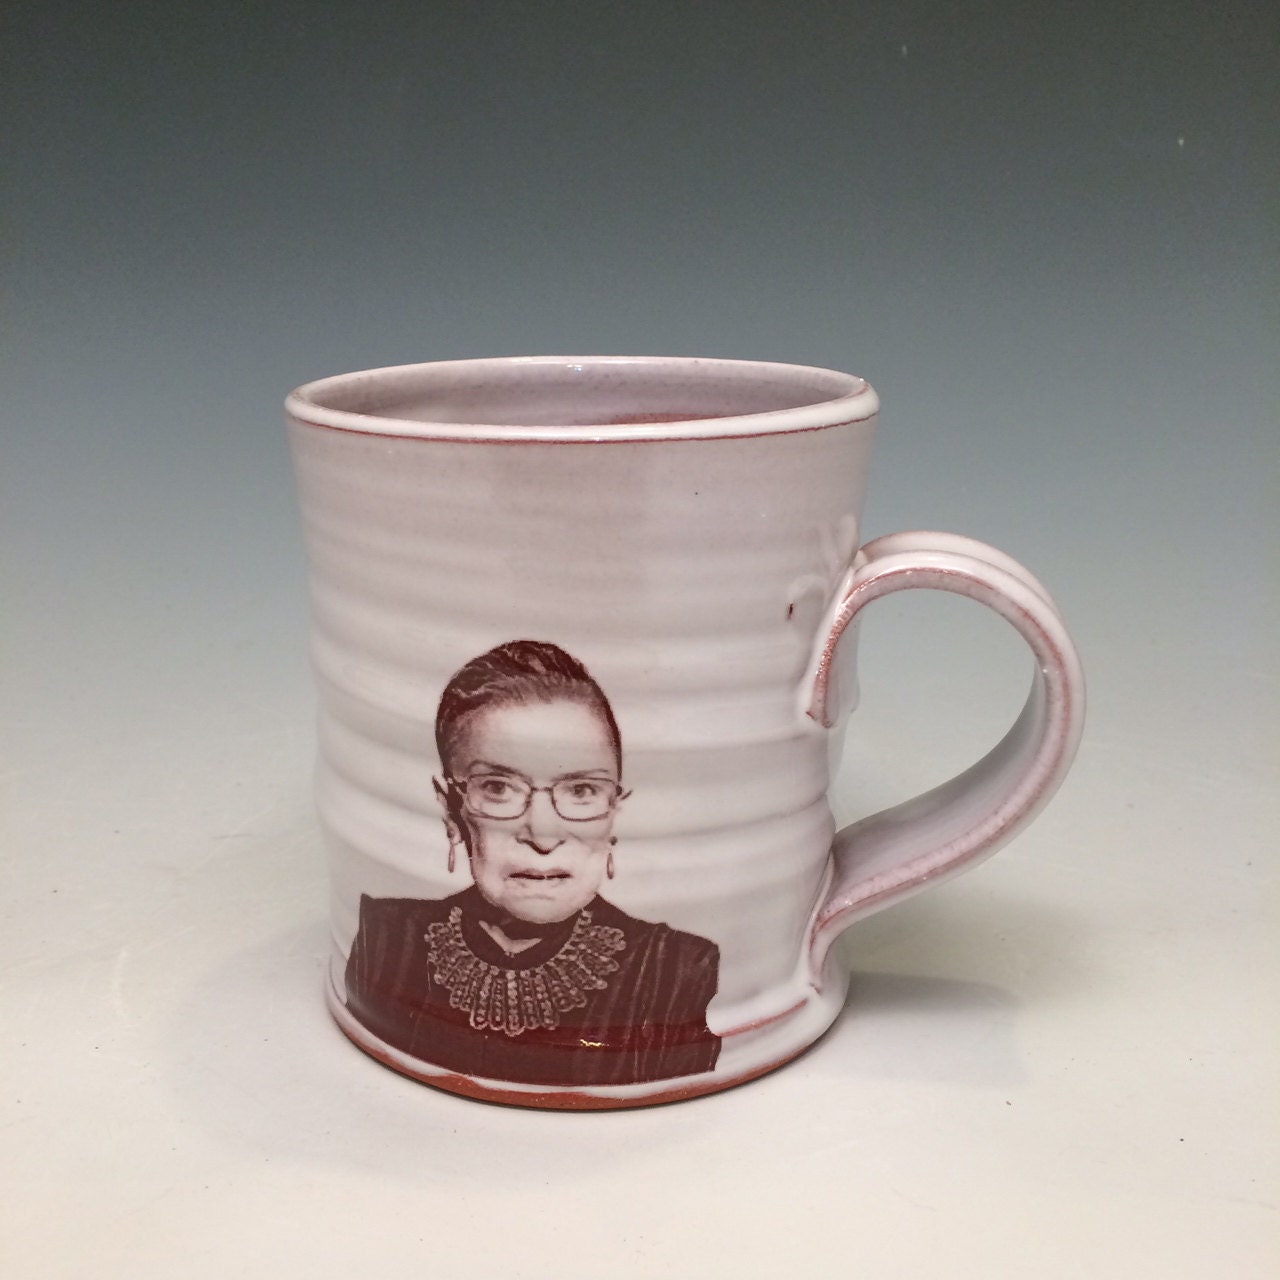 Handmade mug featuring Ruth Bader Ginsburg